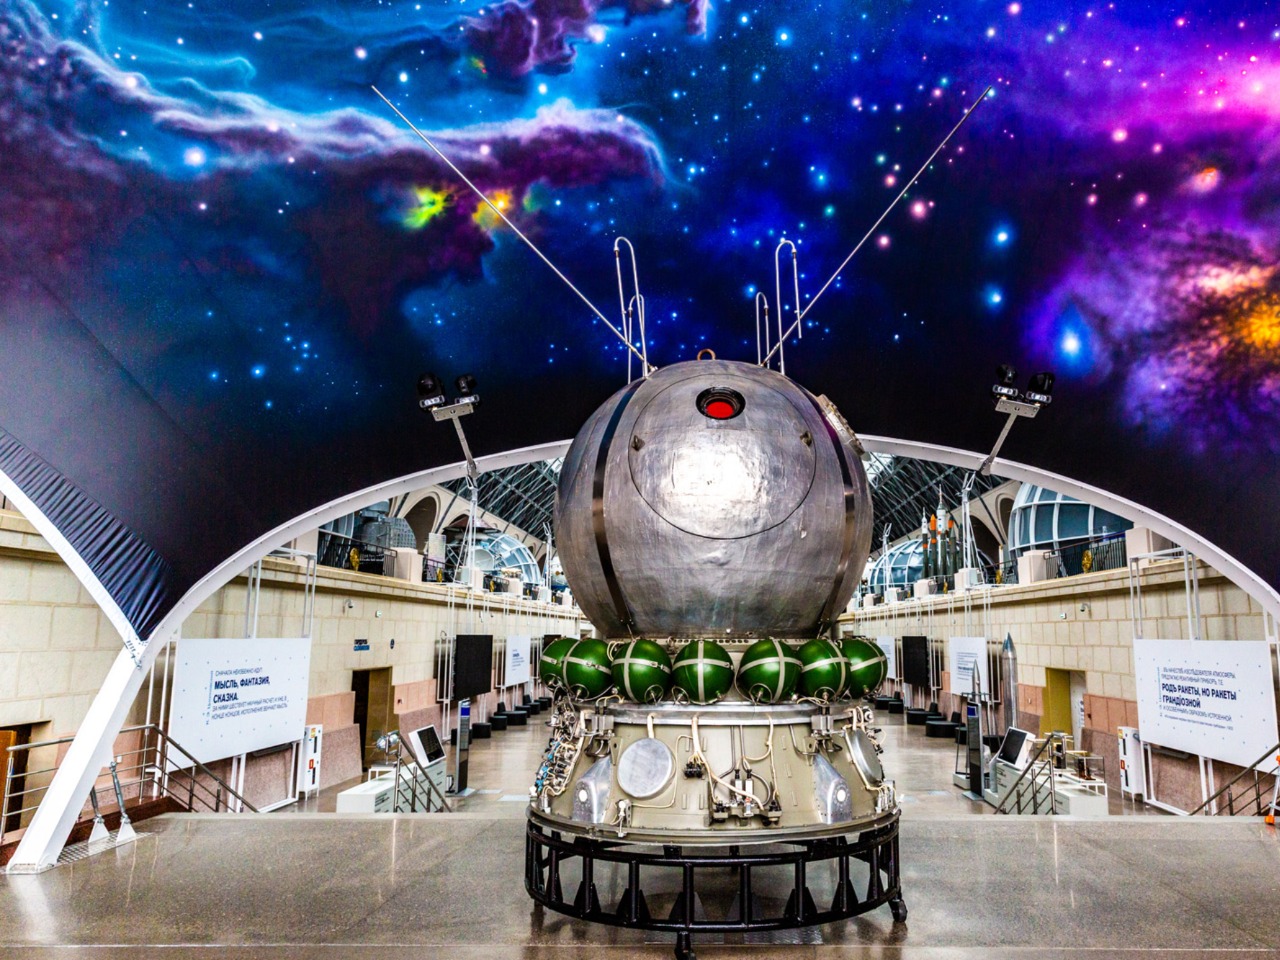 Утро космической эры: Музей космонавтики | Цена 6875₽, отзывы, описание экскурсии